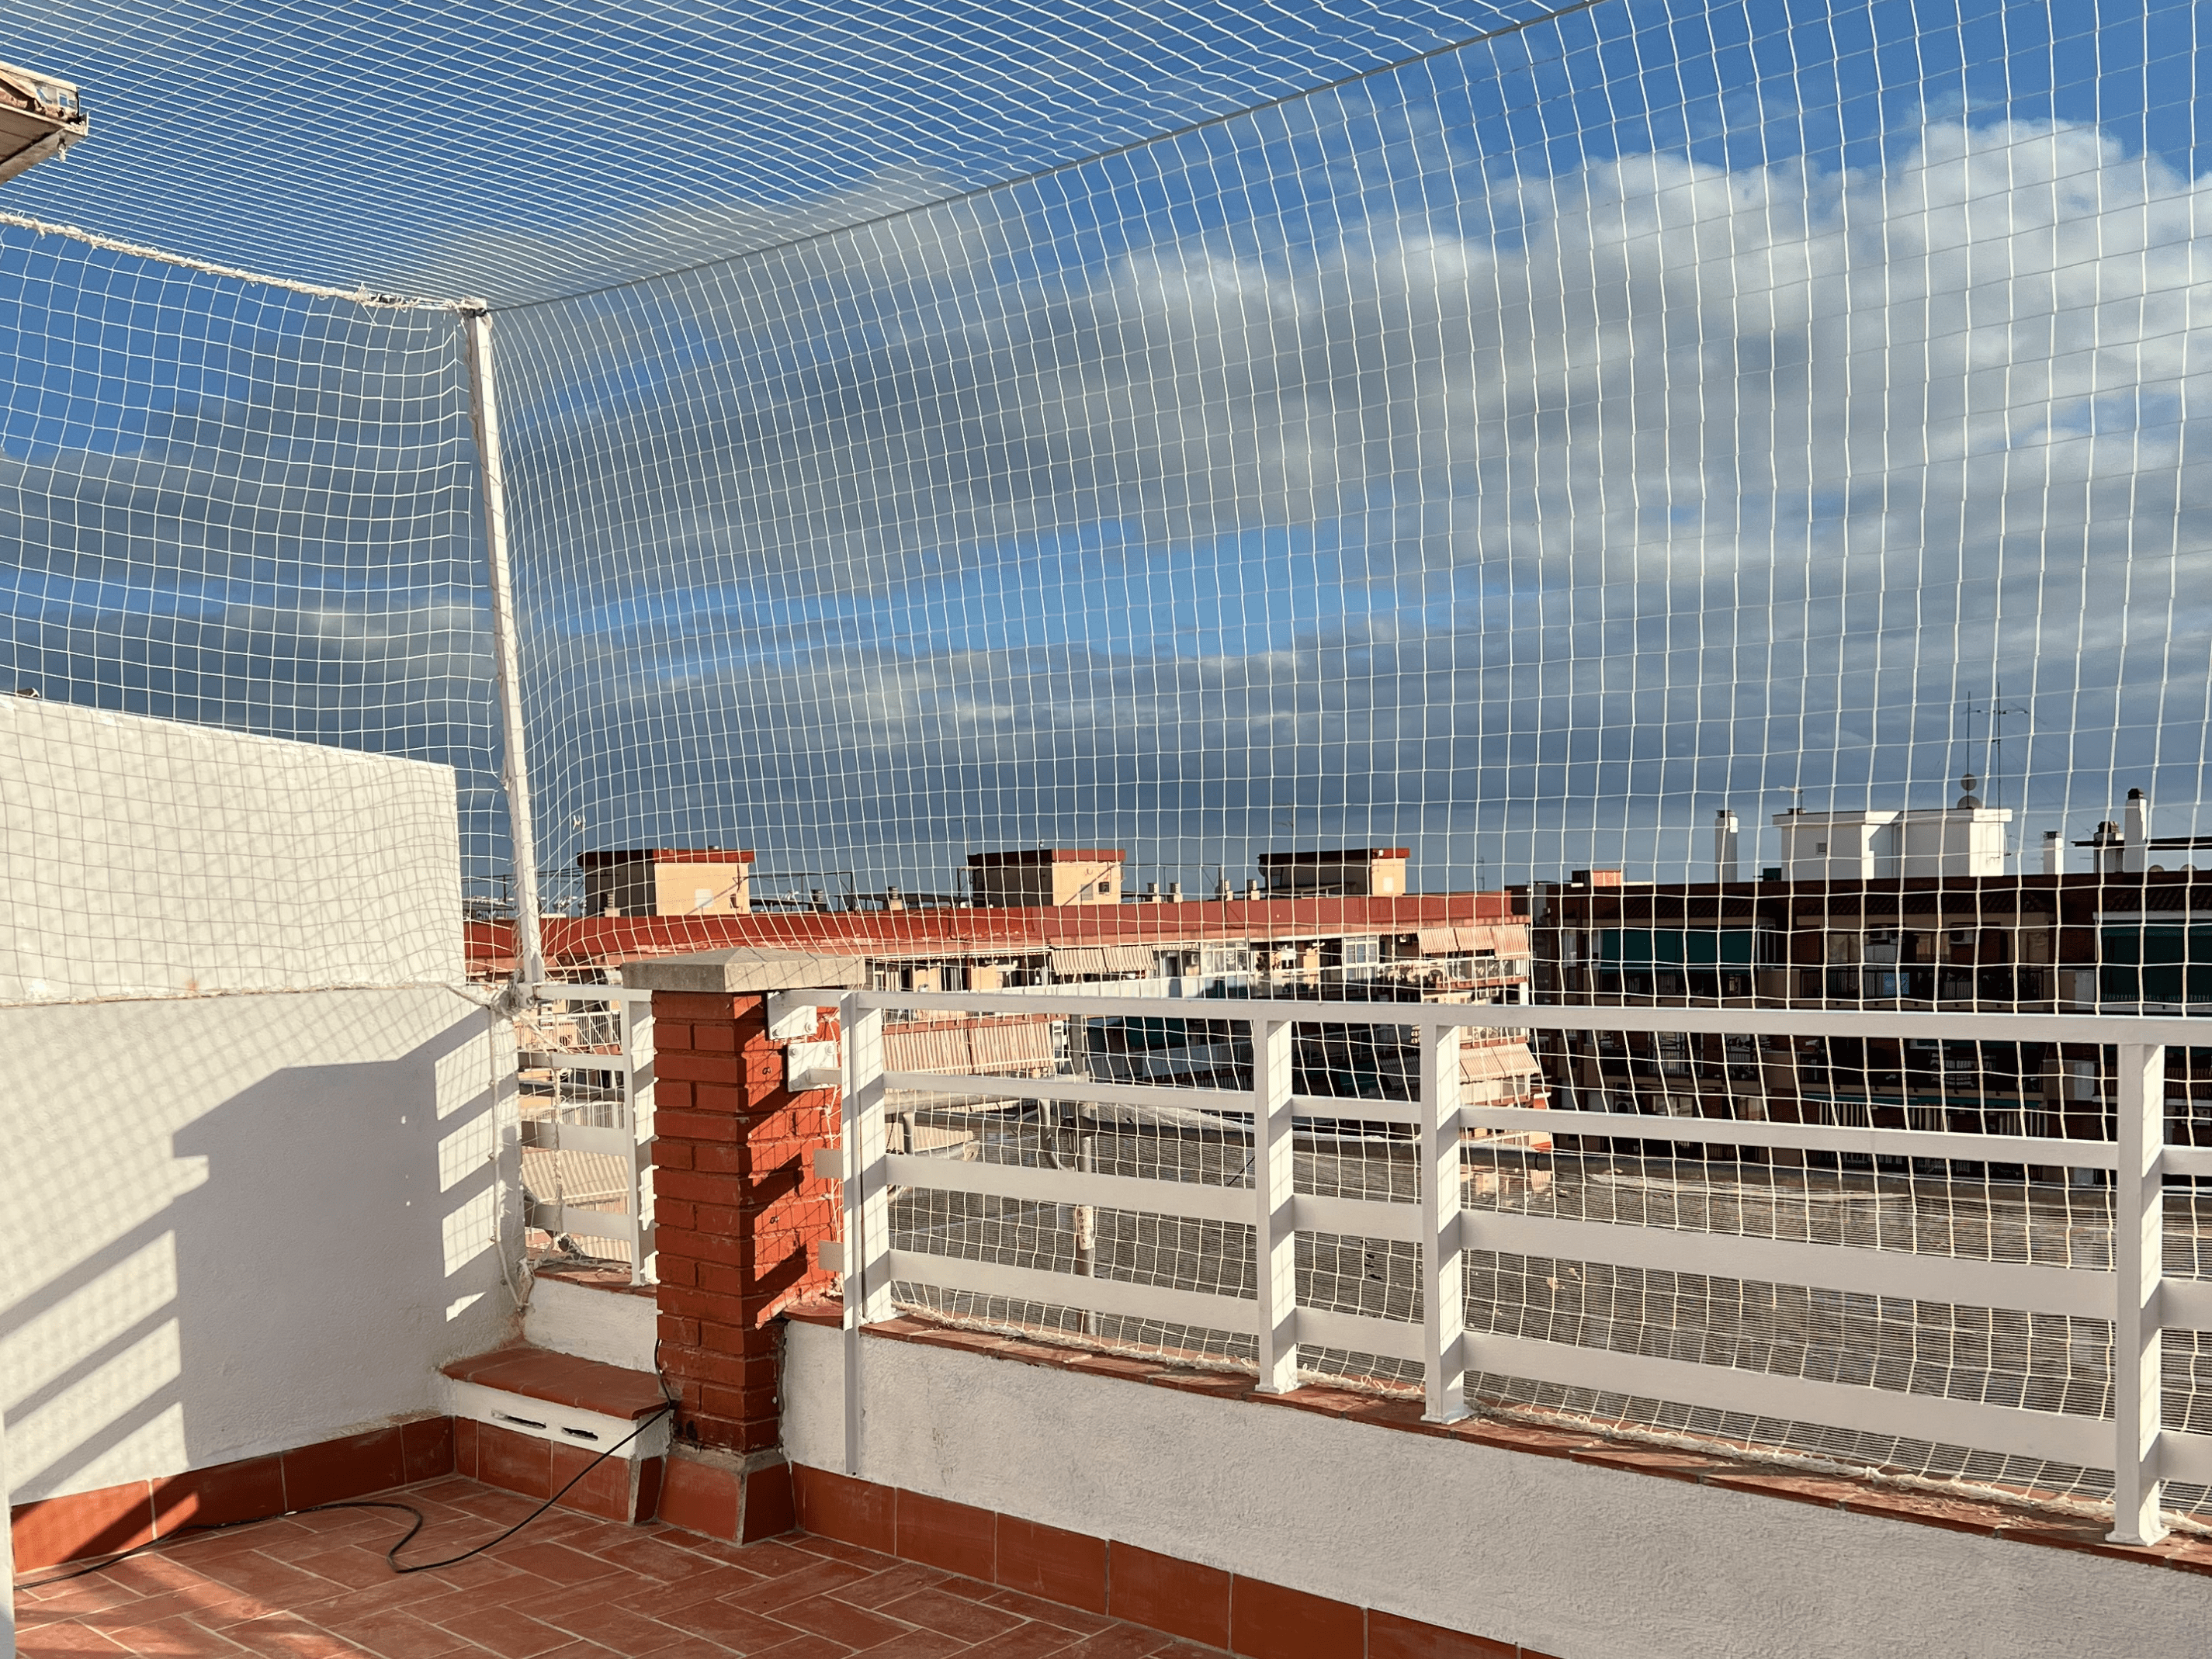 Instalación de redes de protección y seguridad para balcones y ventanas